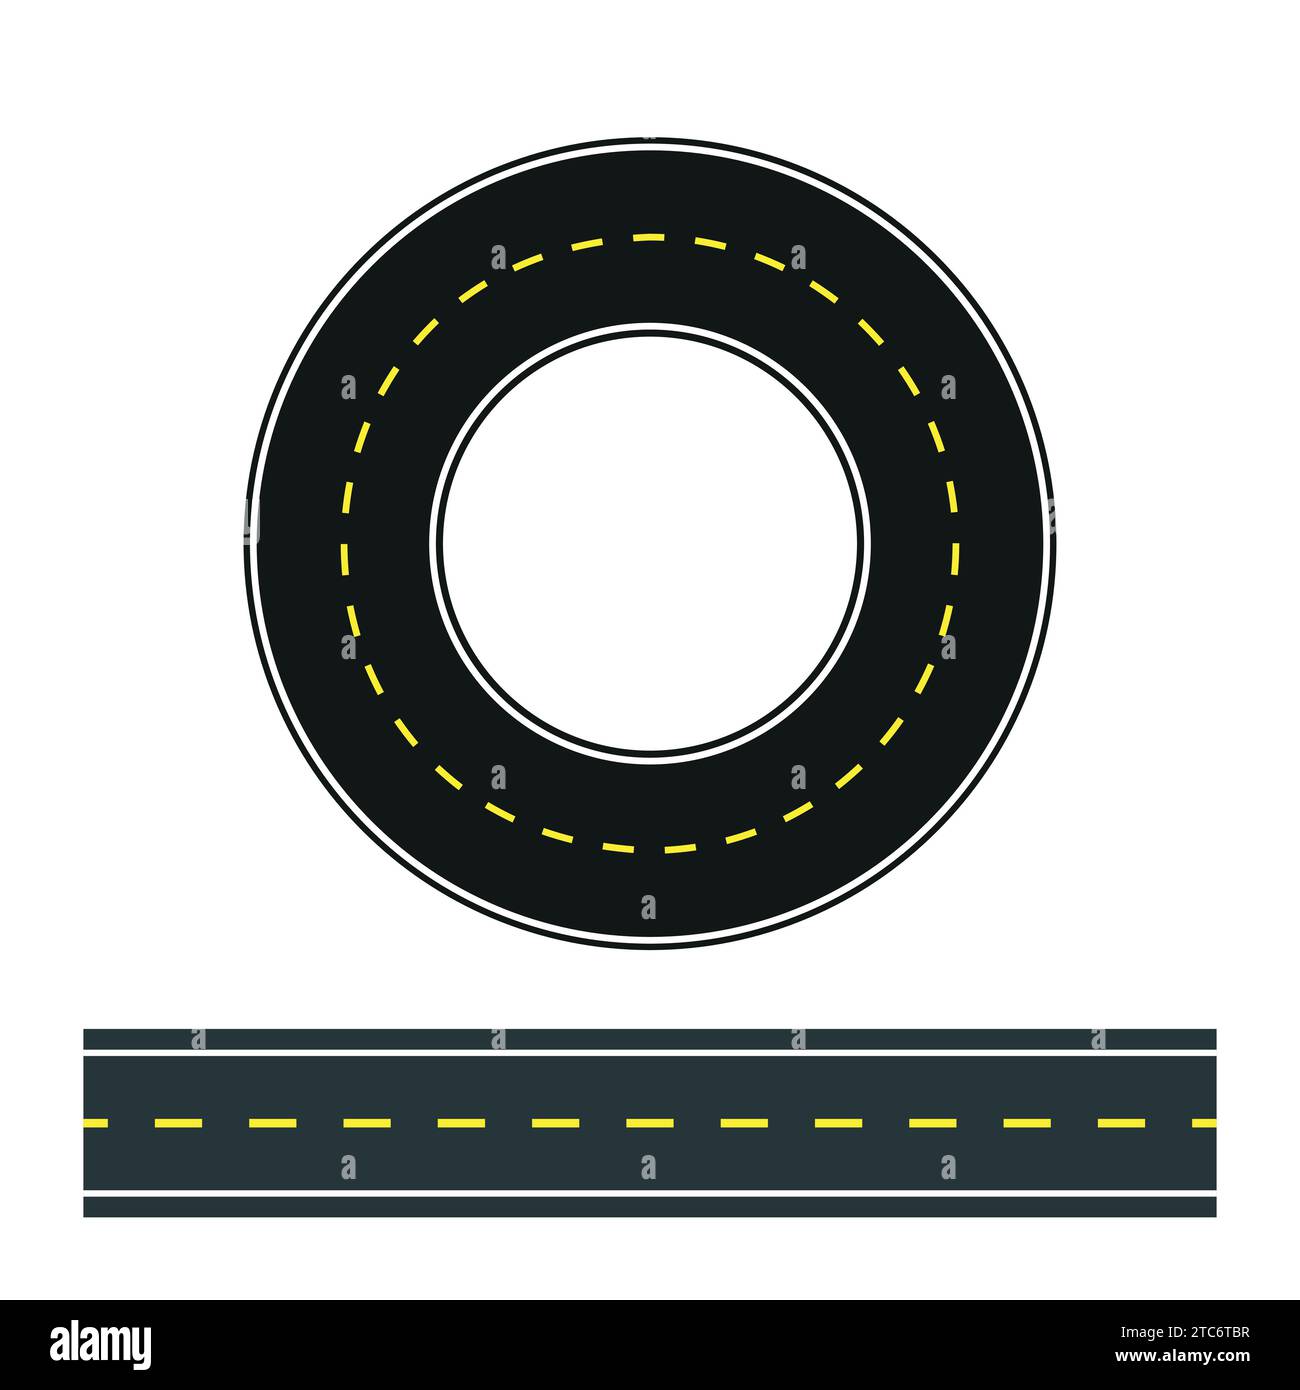 Circonferenza stradale asfaltata tangenziale segnaletica stradale vettoriale. Illustrazione Vettoriale